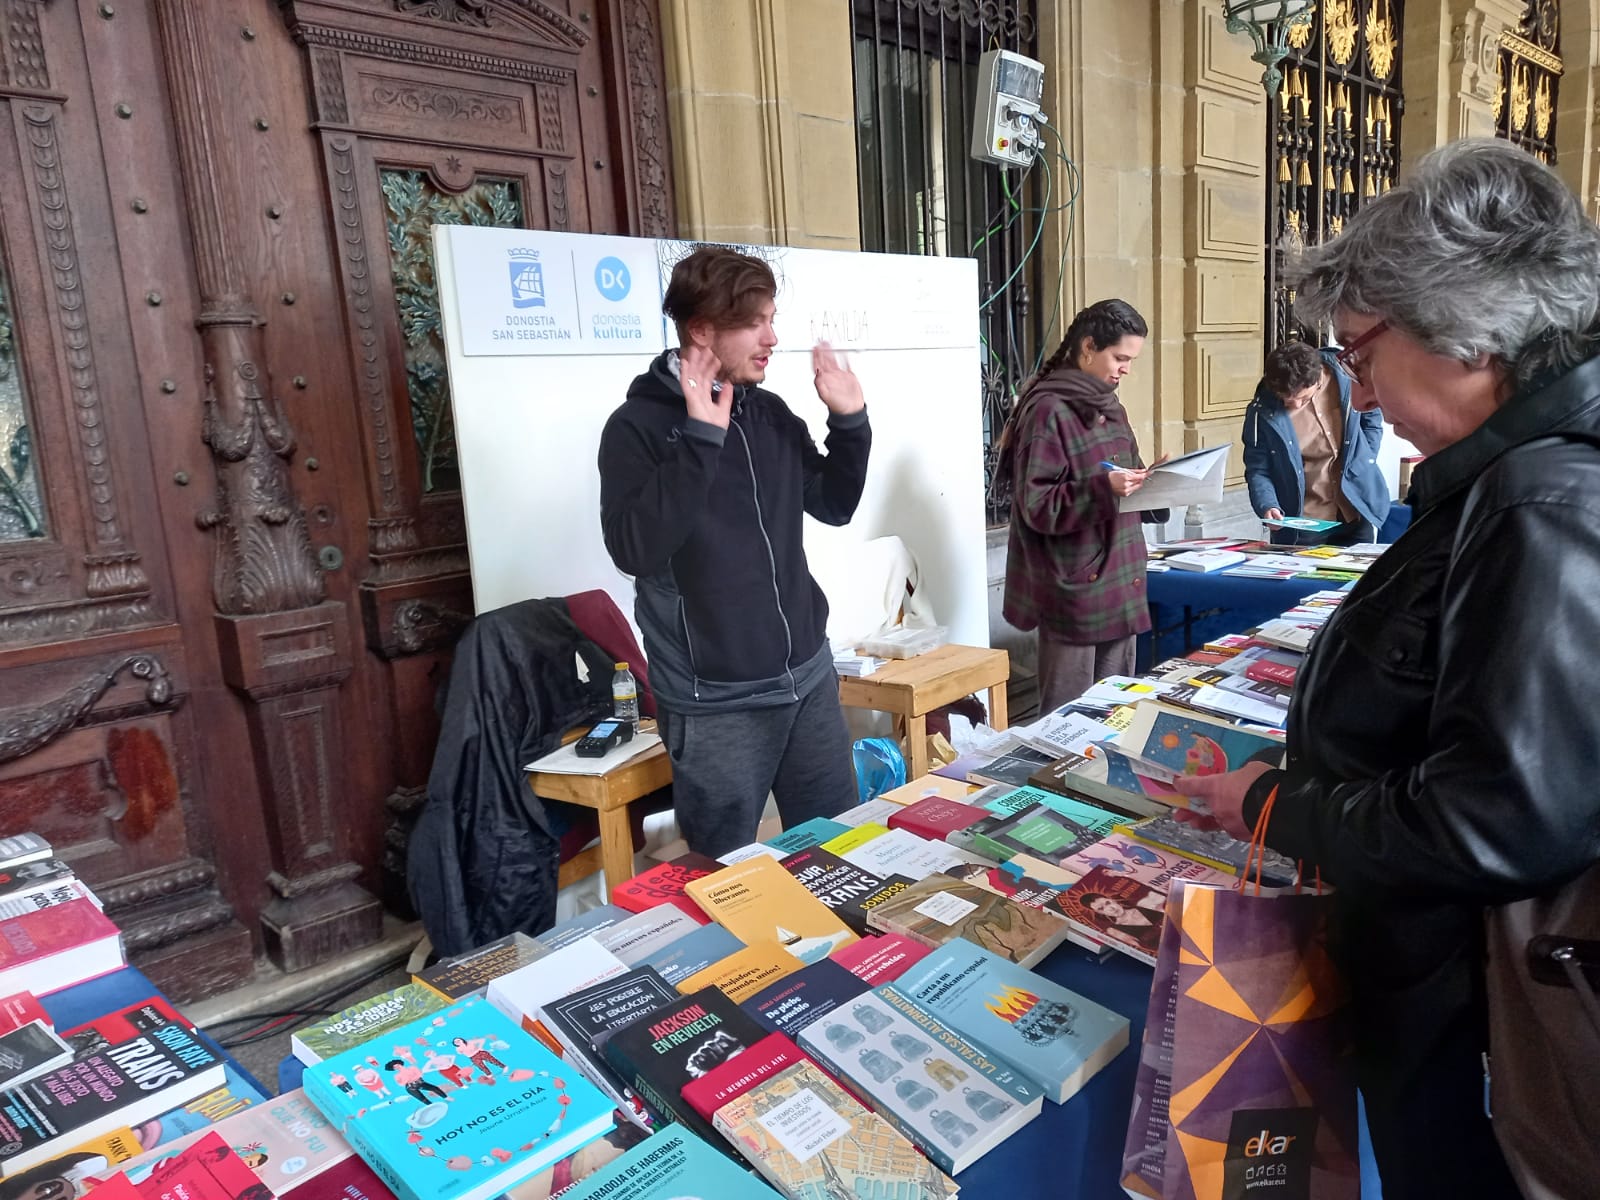 Feria del libro2 - Buena afluencia a la Feria del libro 2022 de Donostia en sus primeras horas